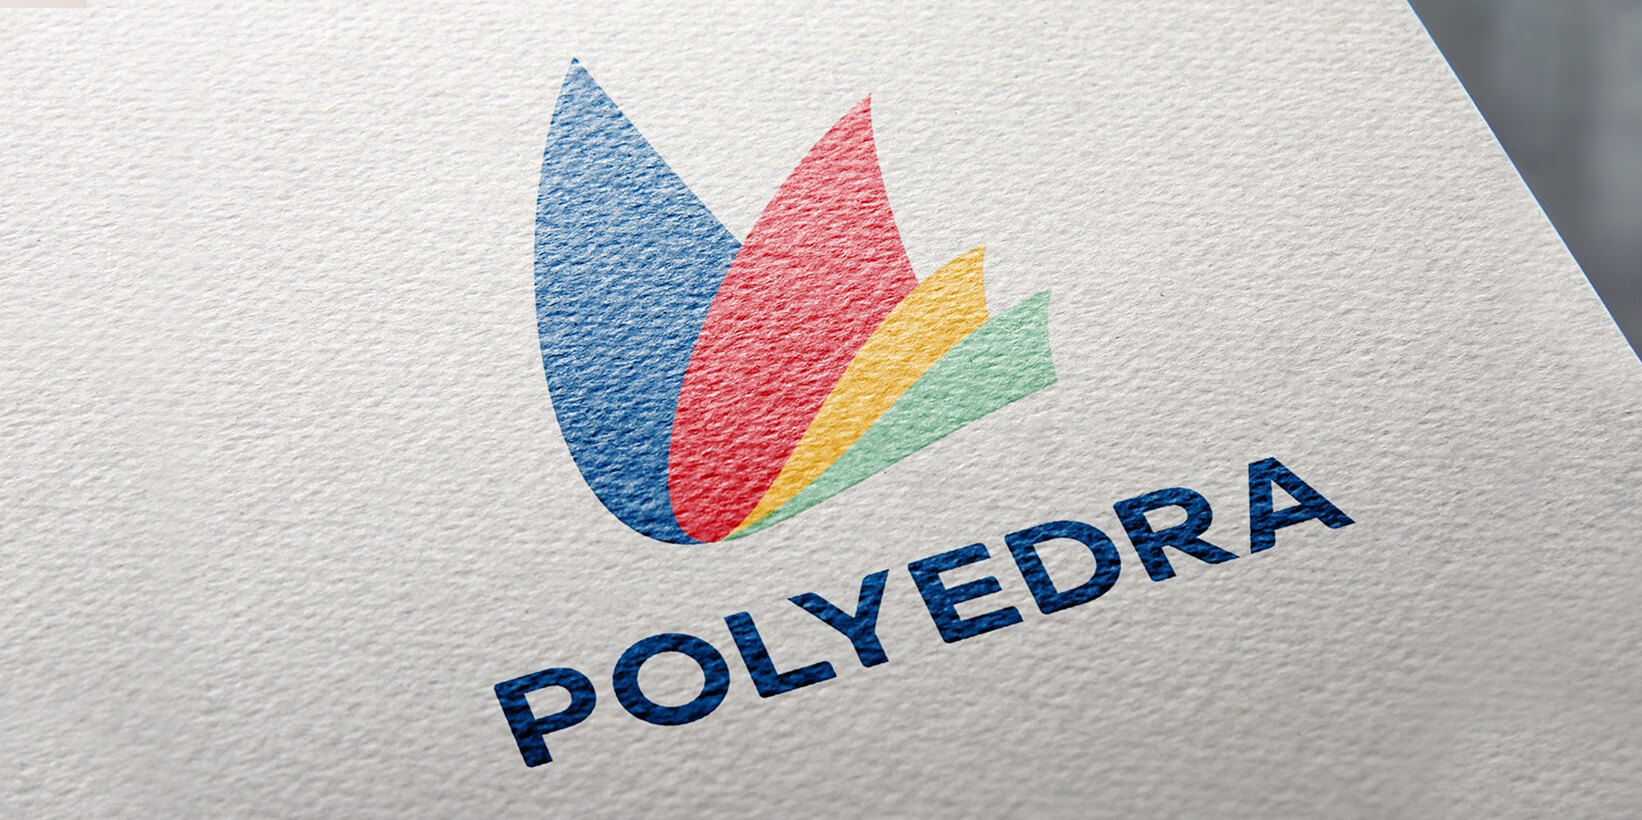 logo polyedra stampato a colori su carta ruvida